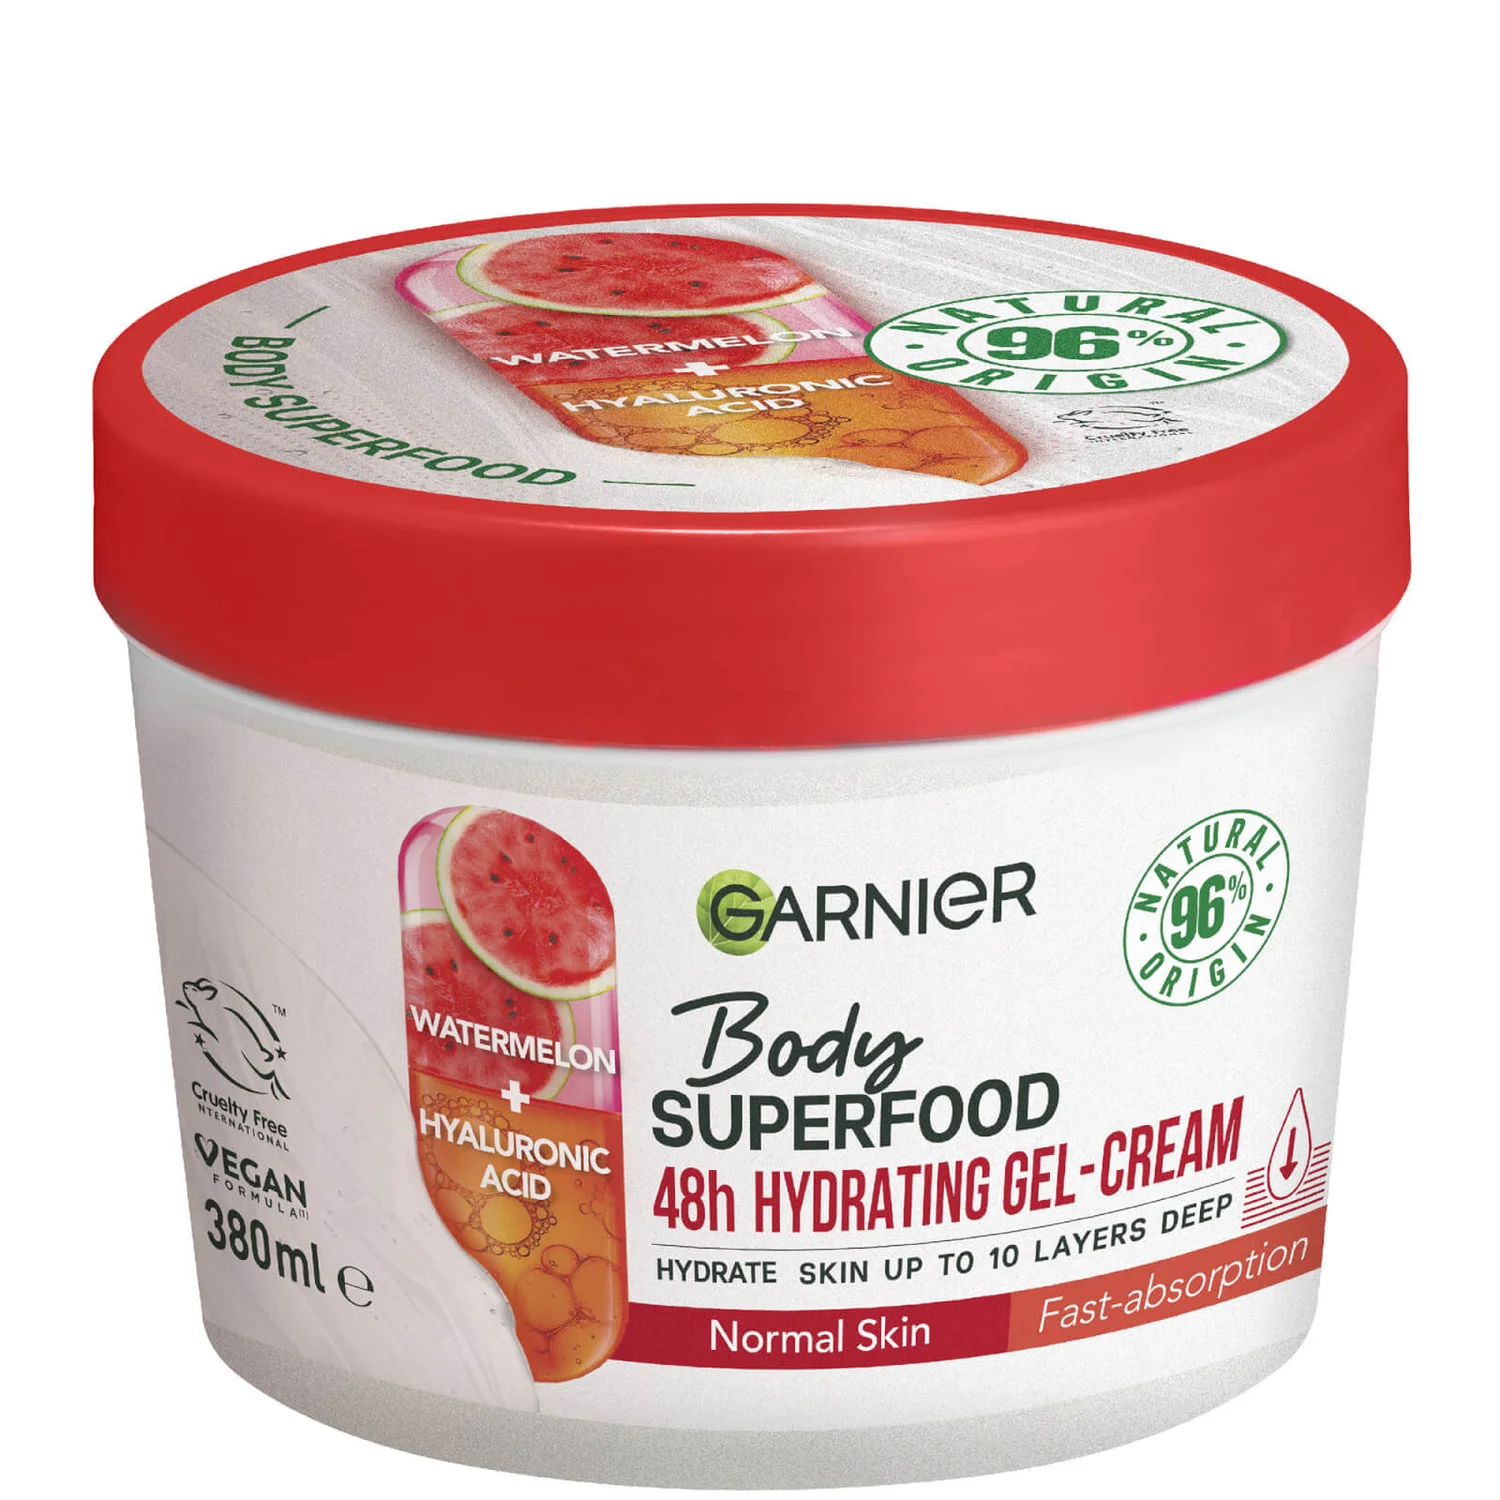 lookfantastic.com | Garnier Body Superfood Watermelon & Hyaluronic Acid Hydrating Gel-Cream for Body, 380ml